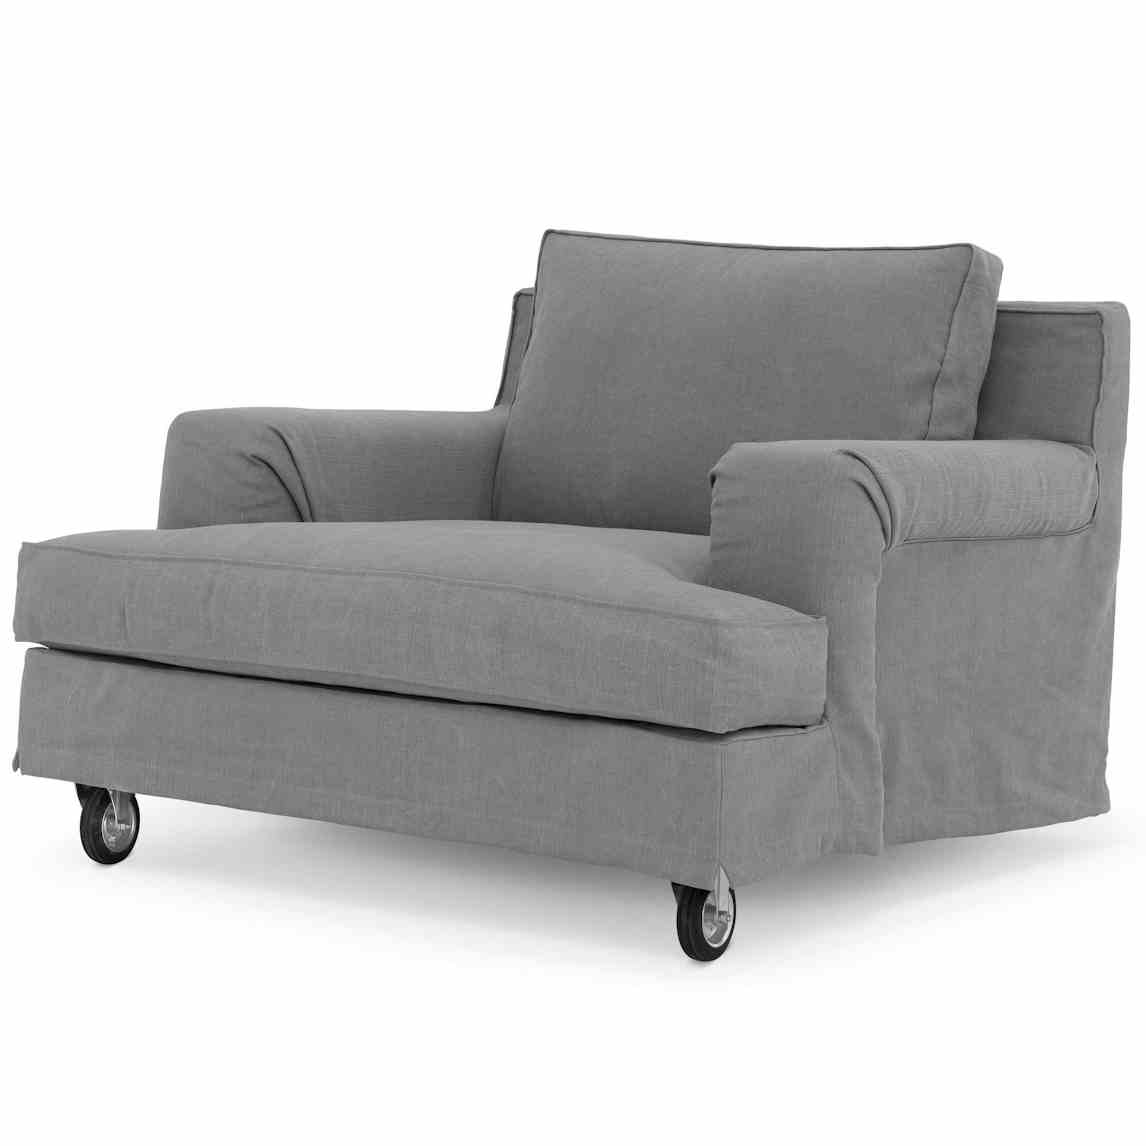 Lema-furniture-aberdeen-armchair-wheel-haute-living